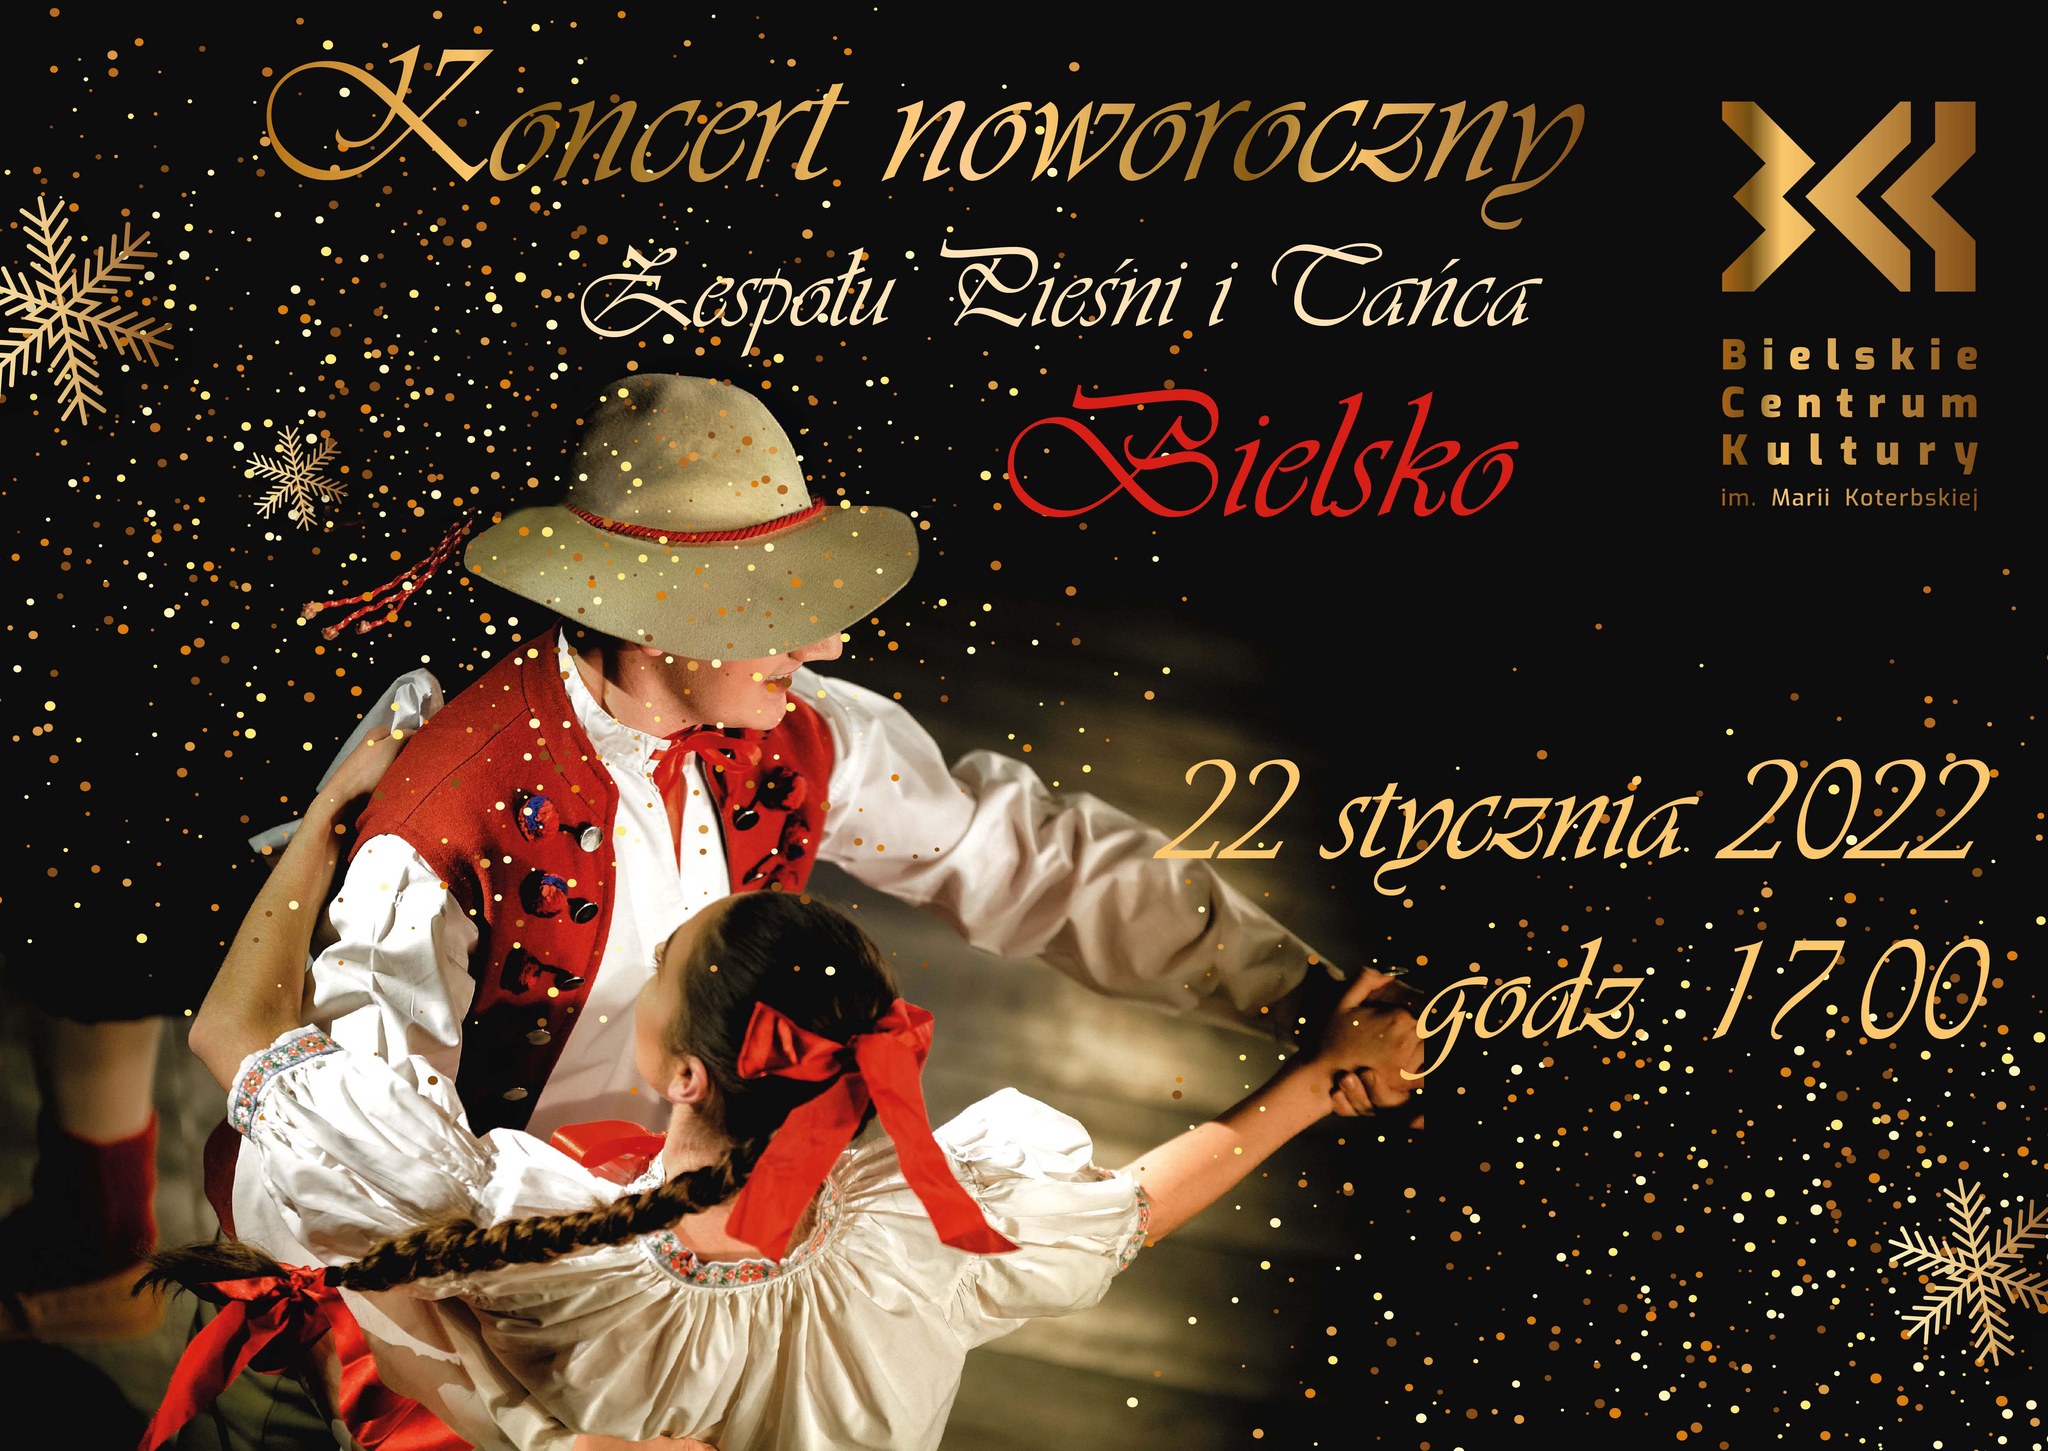  Zespół Pieśni i Tańca Bielsko Na zdjęciu plakat koncertu